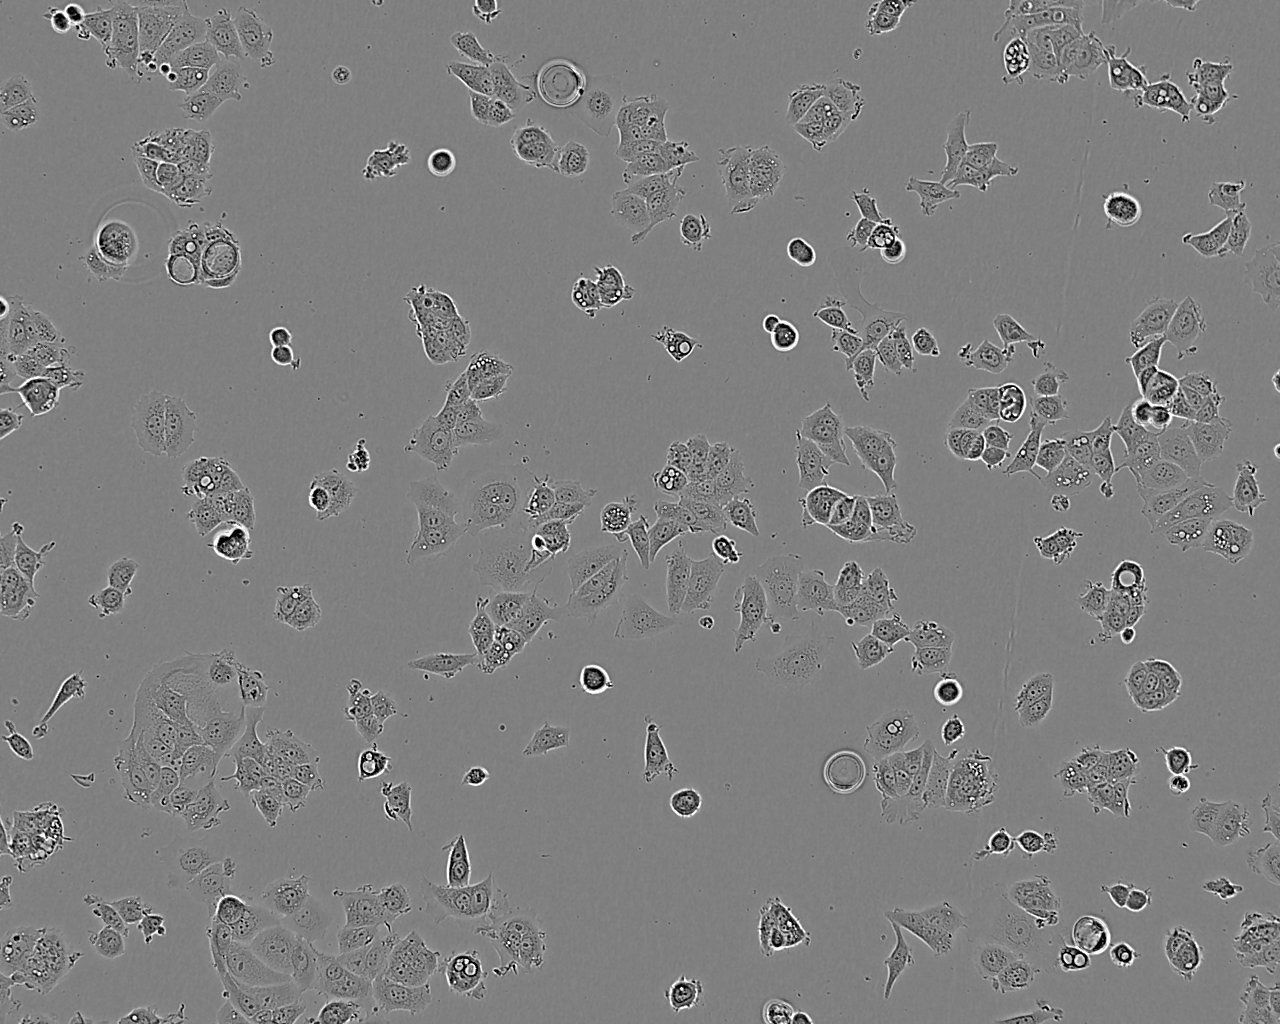 KNS-42 epithelioid cells人脑胶质瘤细胞系